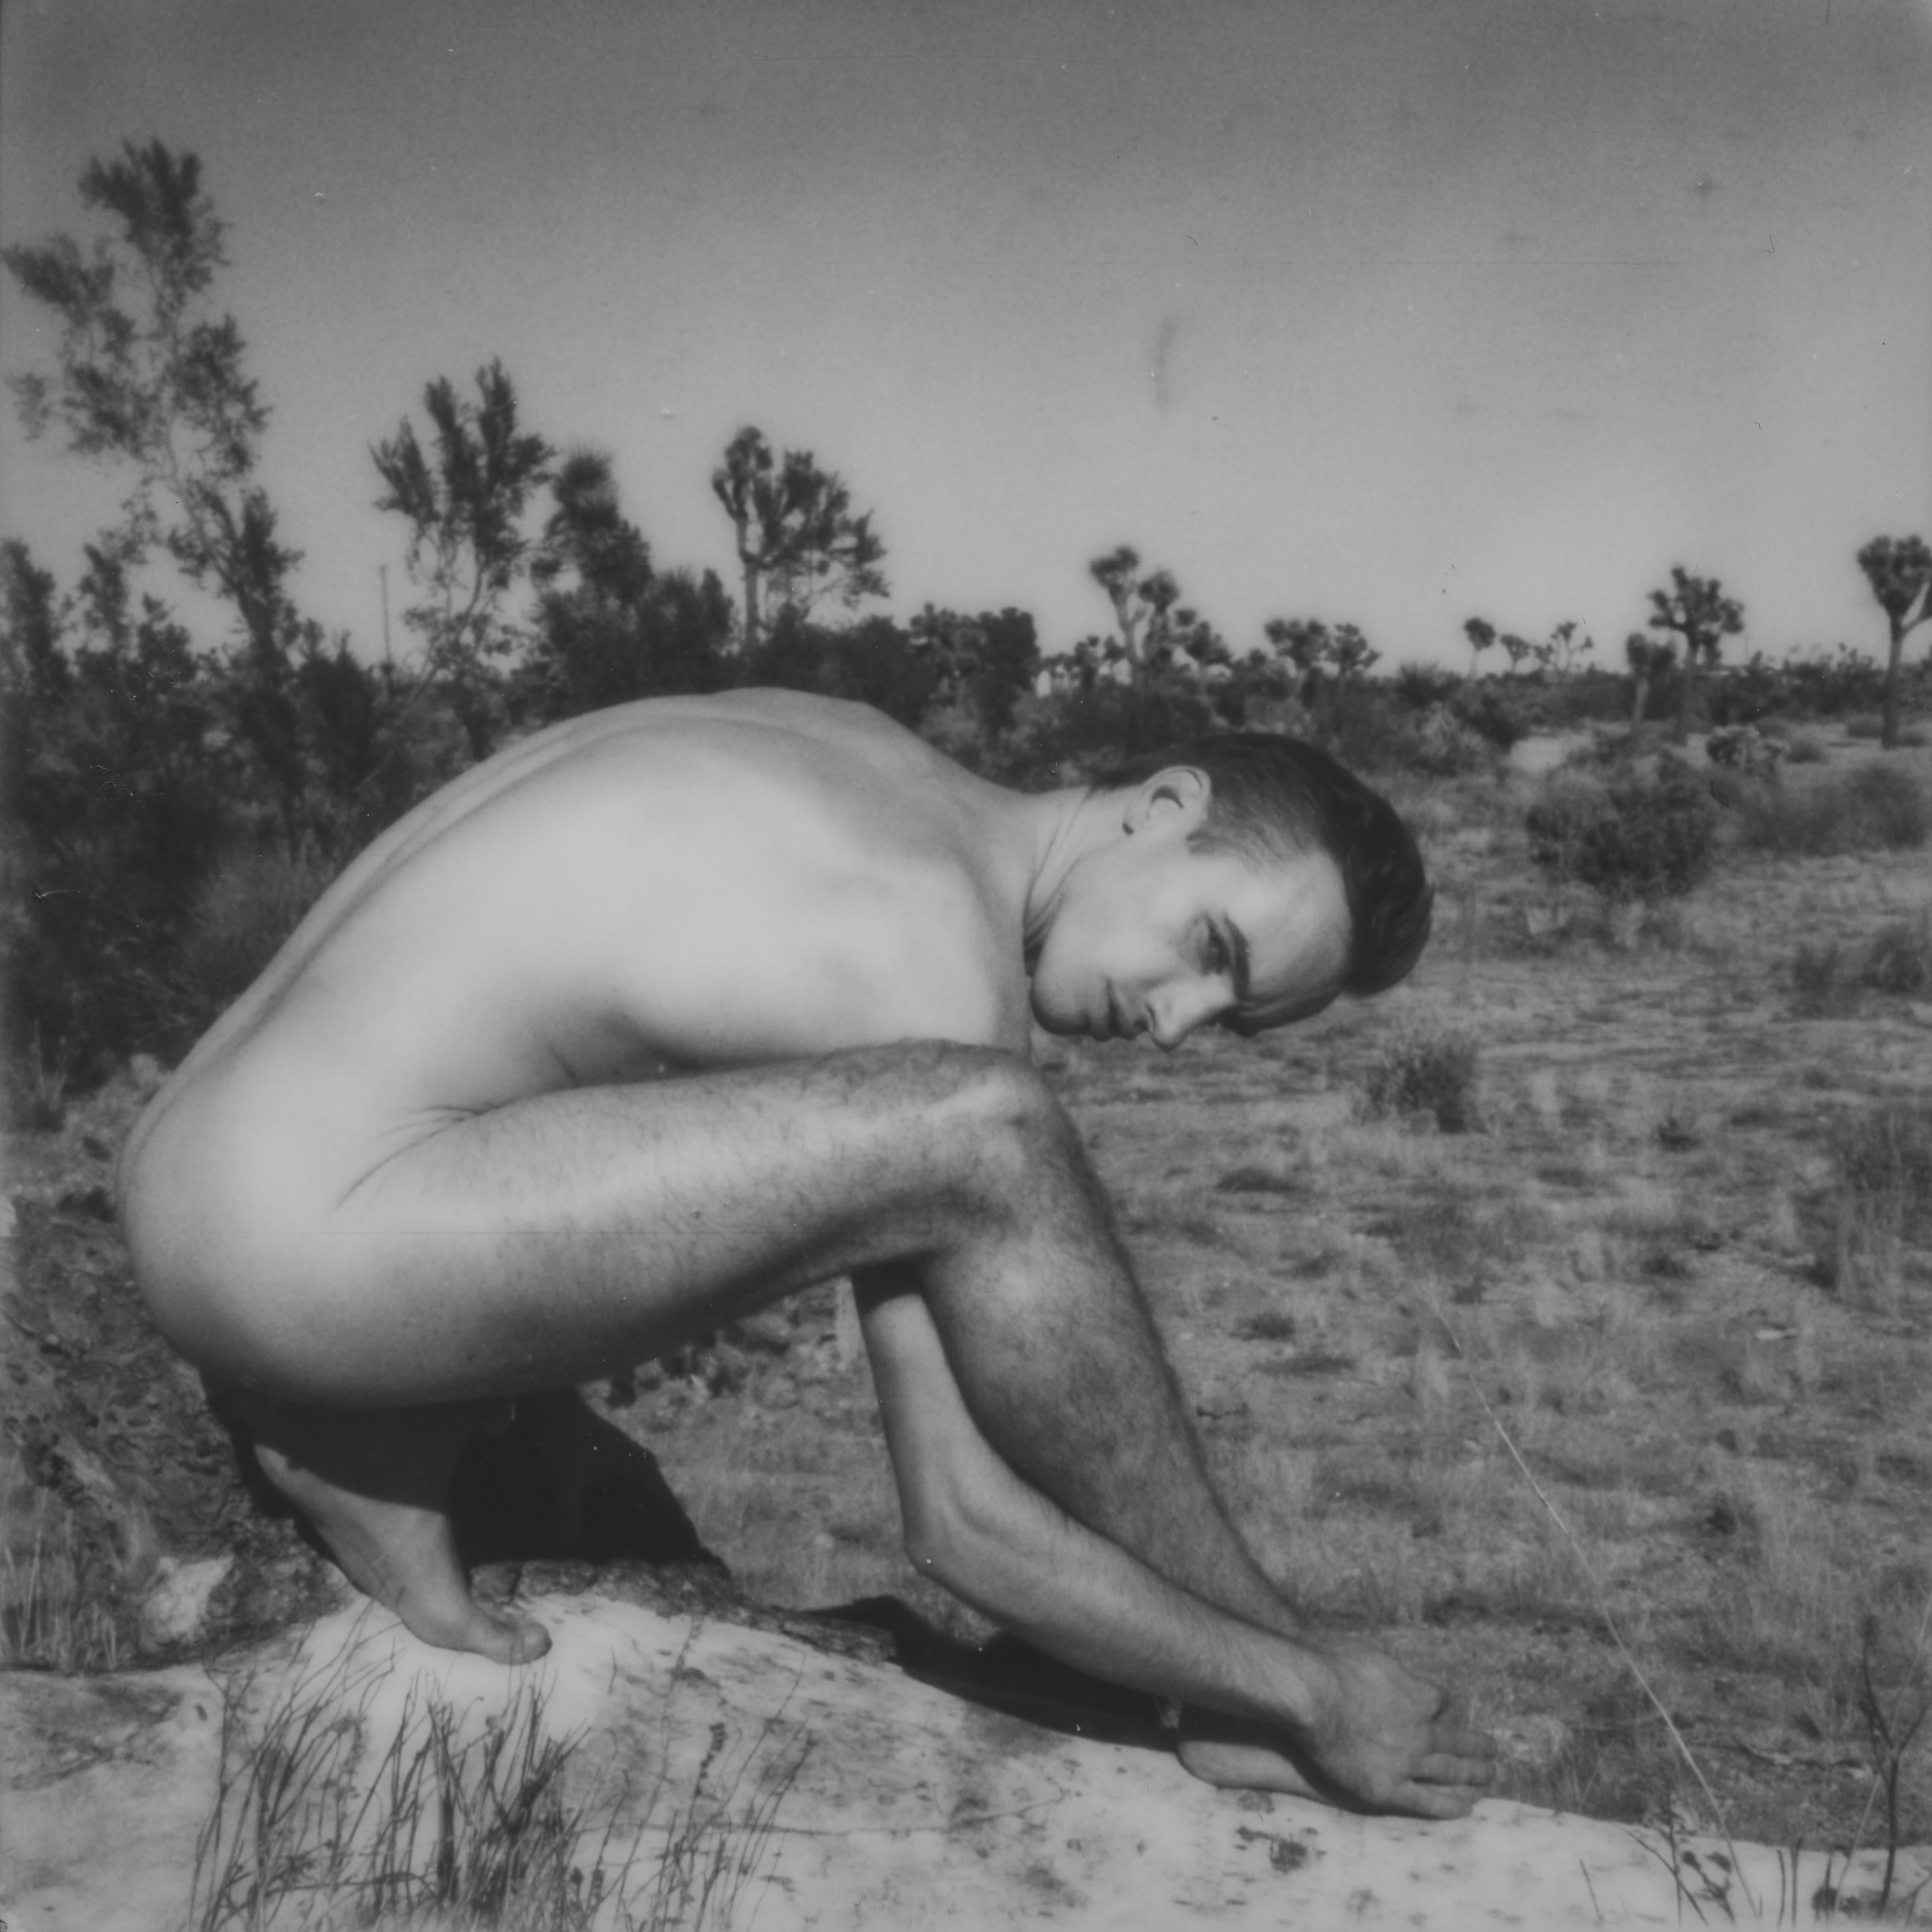 Kirsten Thys van den Audenaerde Nude Photograph - Unfold - Contemporary, Polaroid, Nude, 21st Century, Joshua Tree